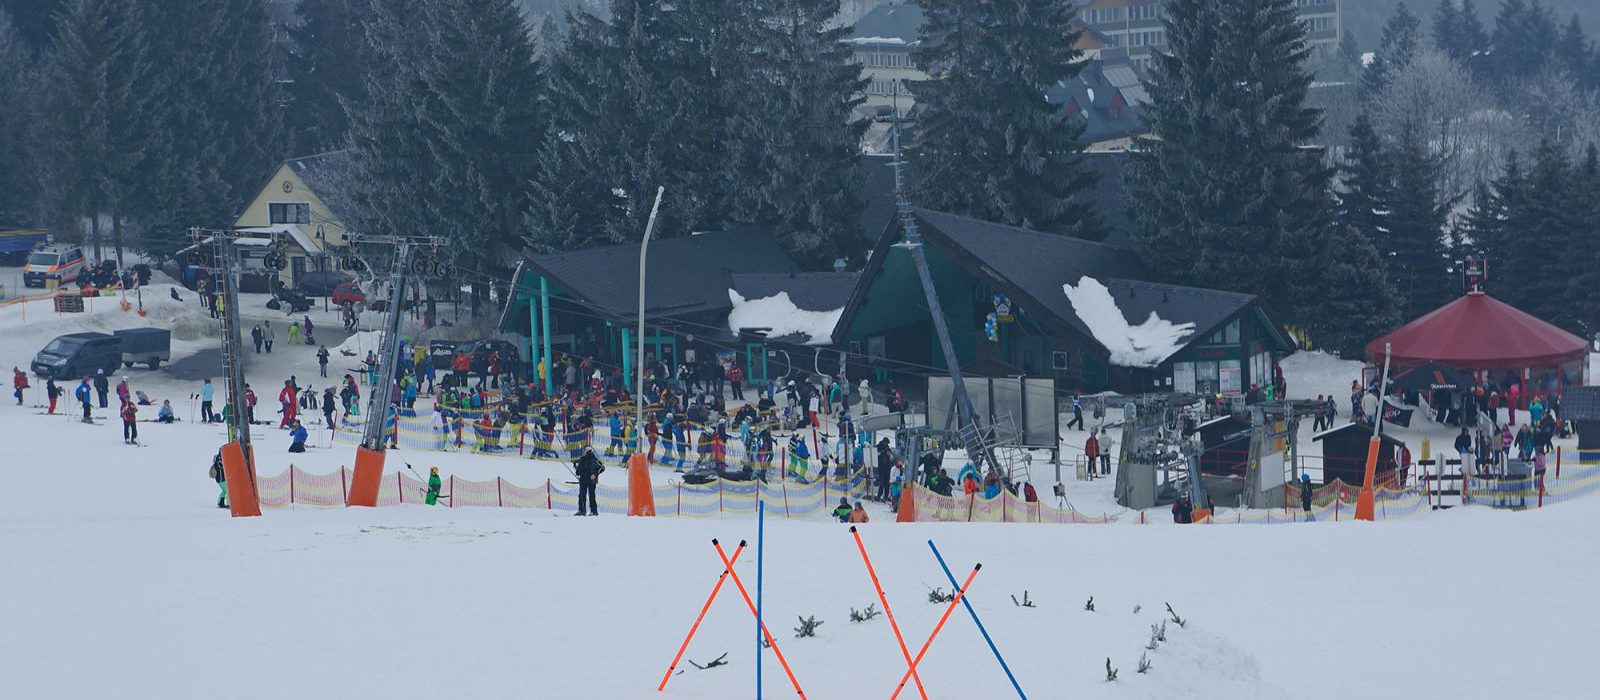 Skihang in Oberwiesenthal